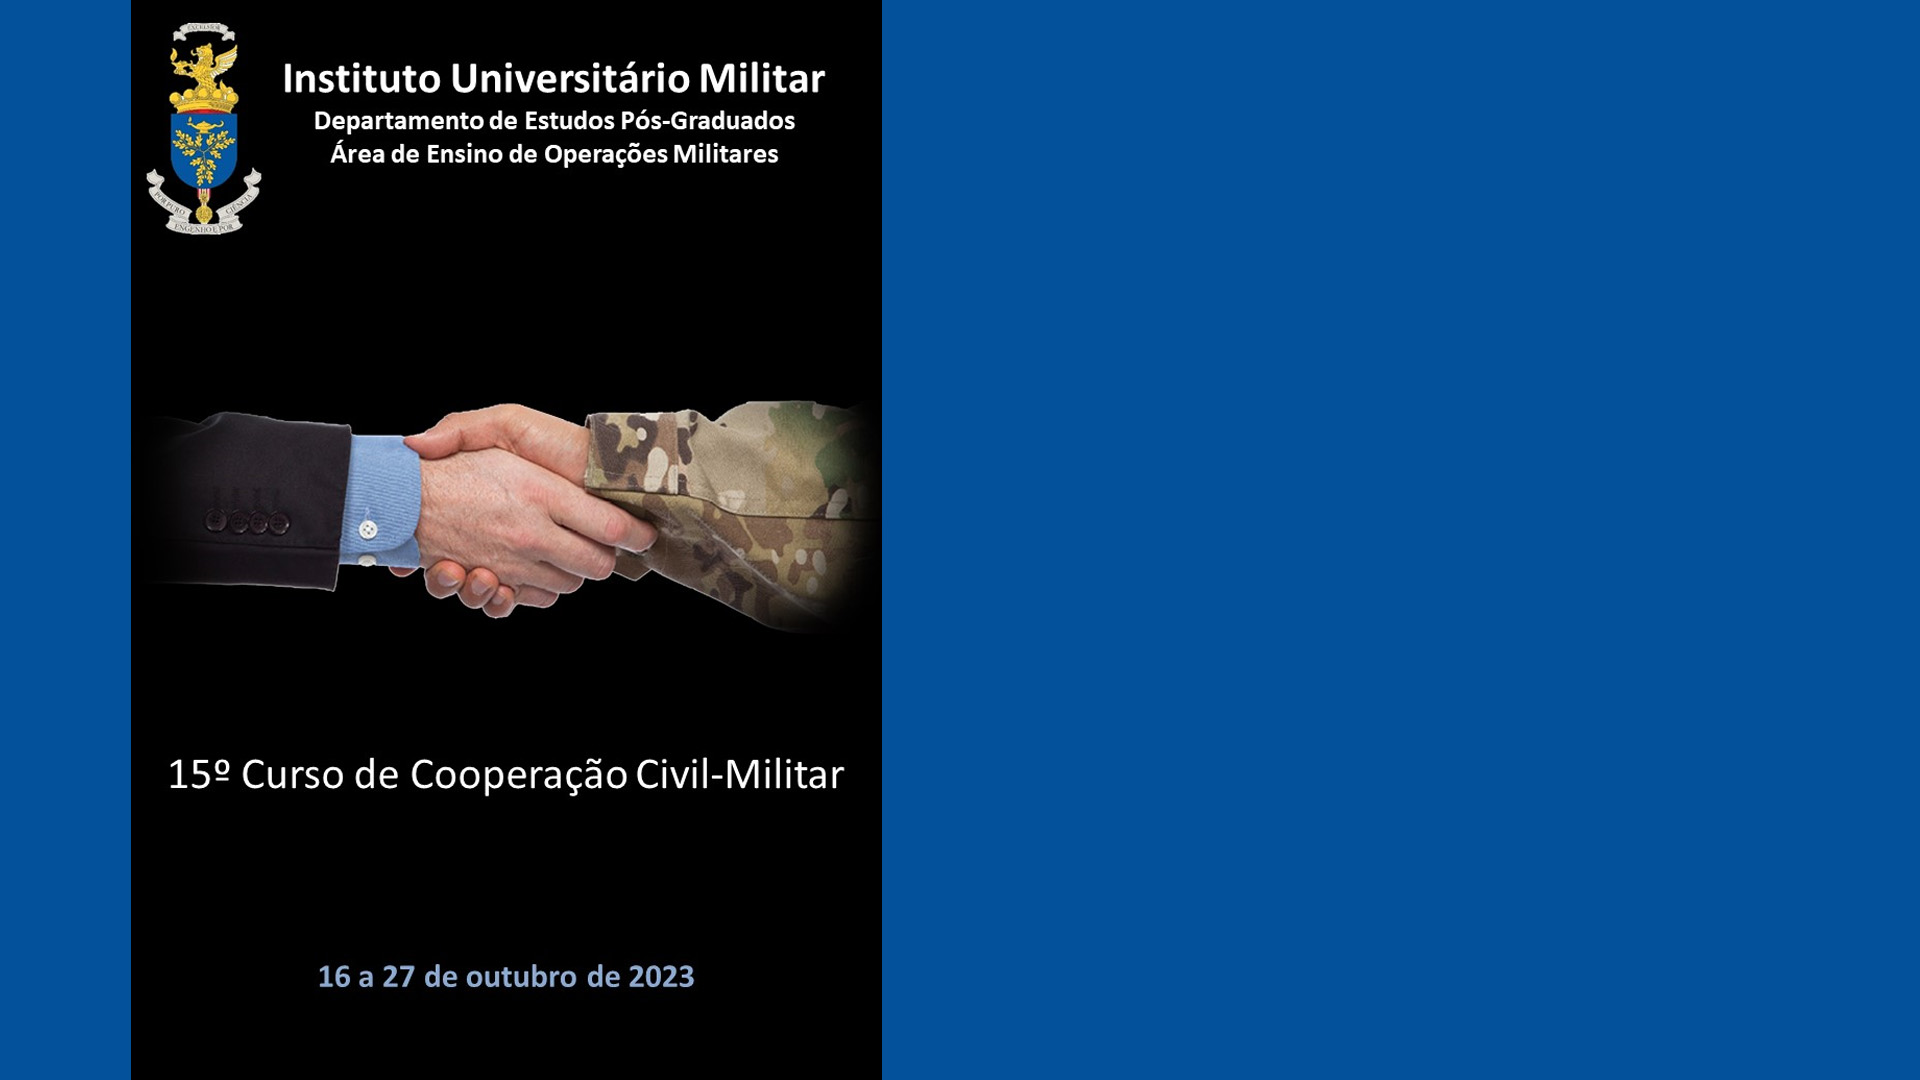 15.º Curso de Cooperação Civil-Militar